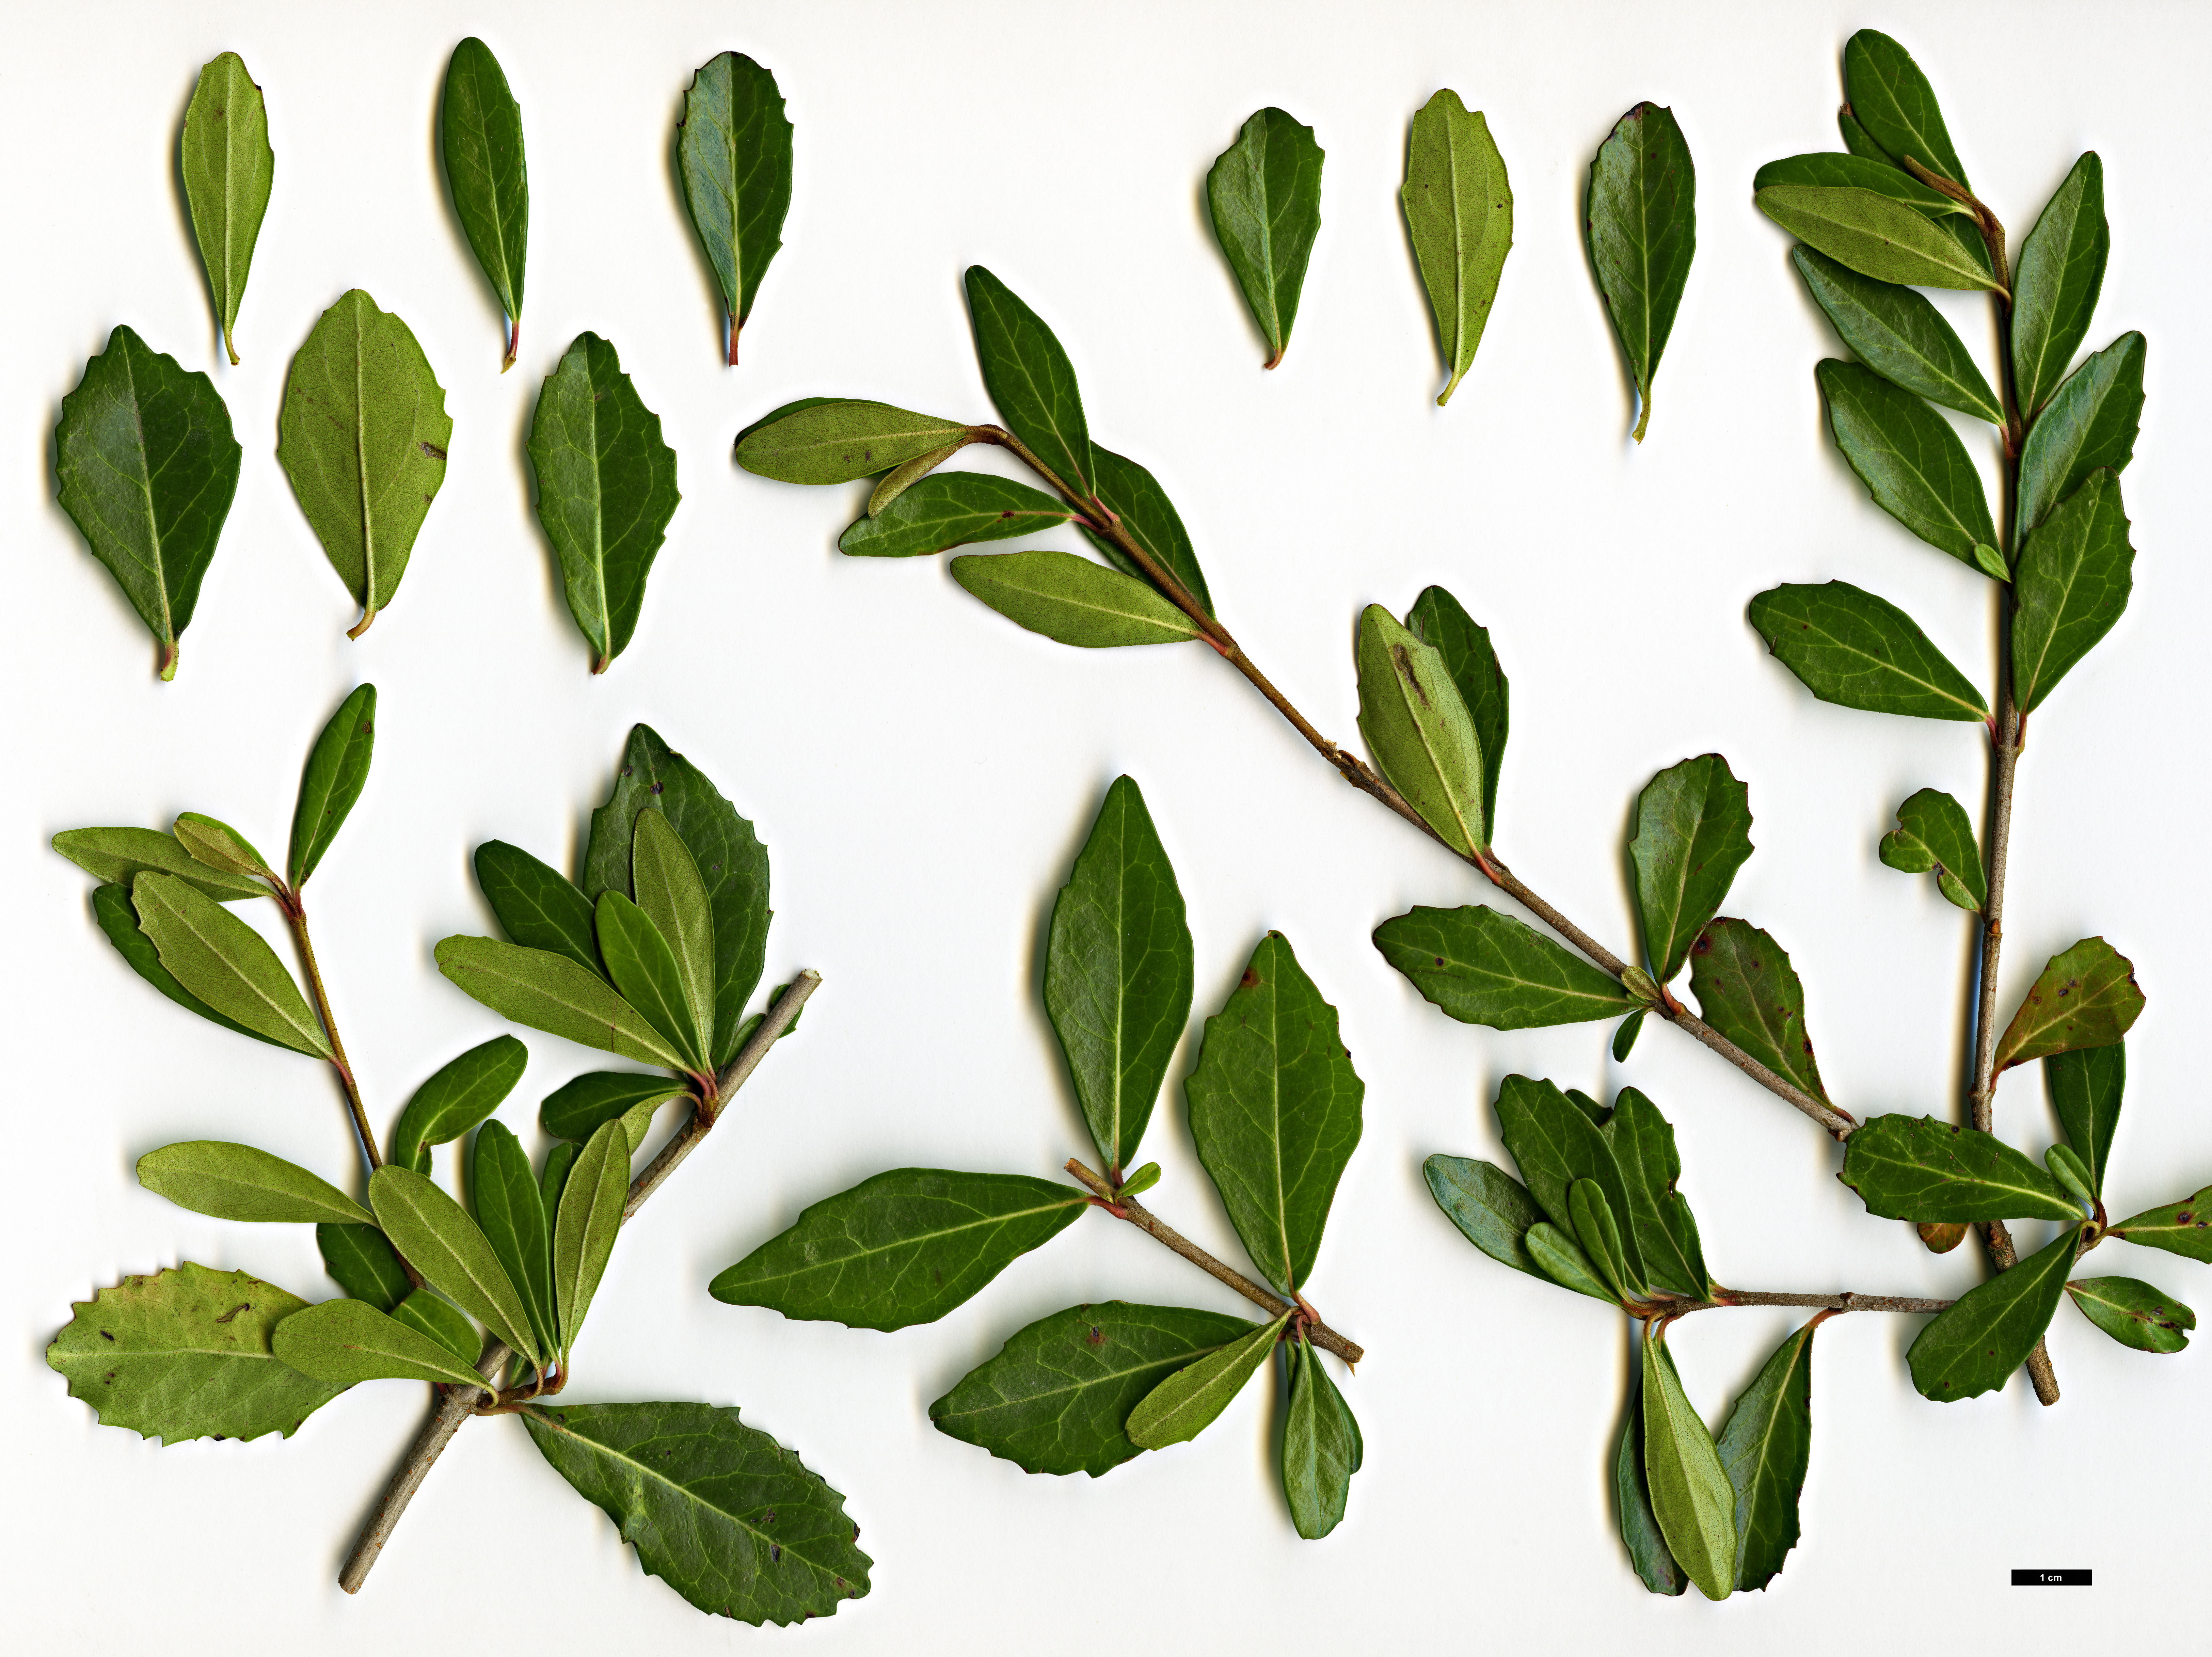 High resolution image: Family: Adoxaceae - Genus: Viburnum - Taxon: obovatum